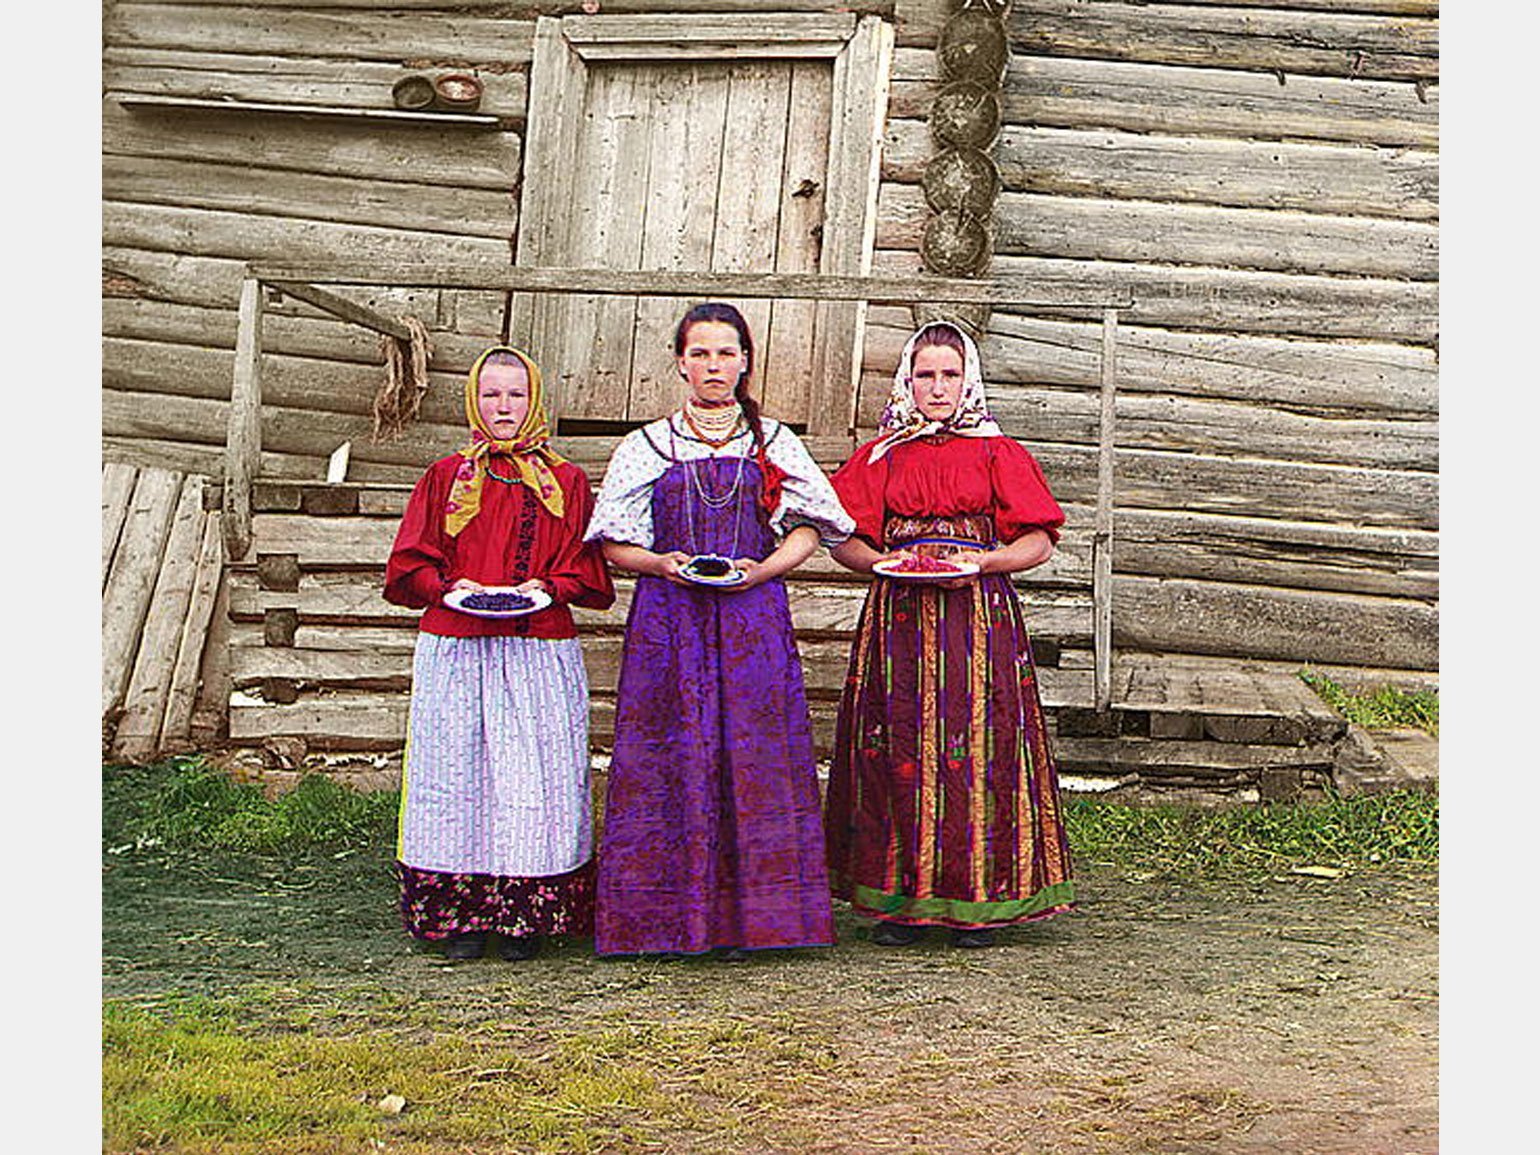 Первые цветные фотографии России